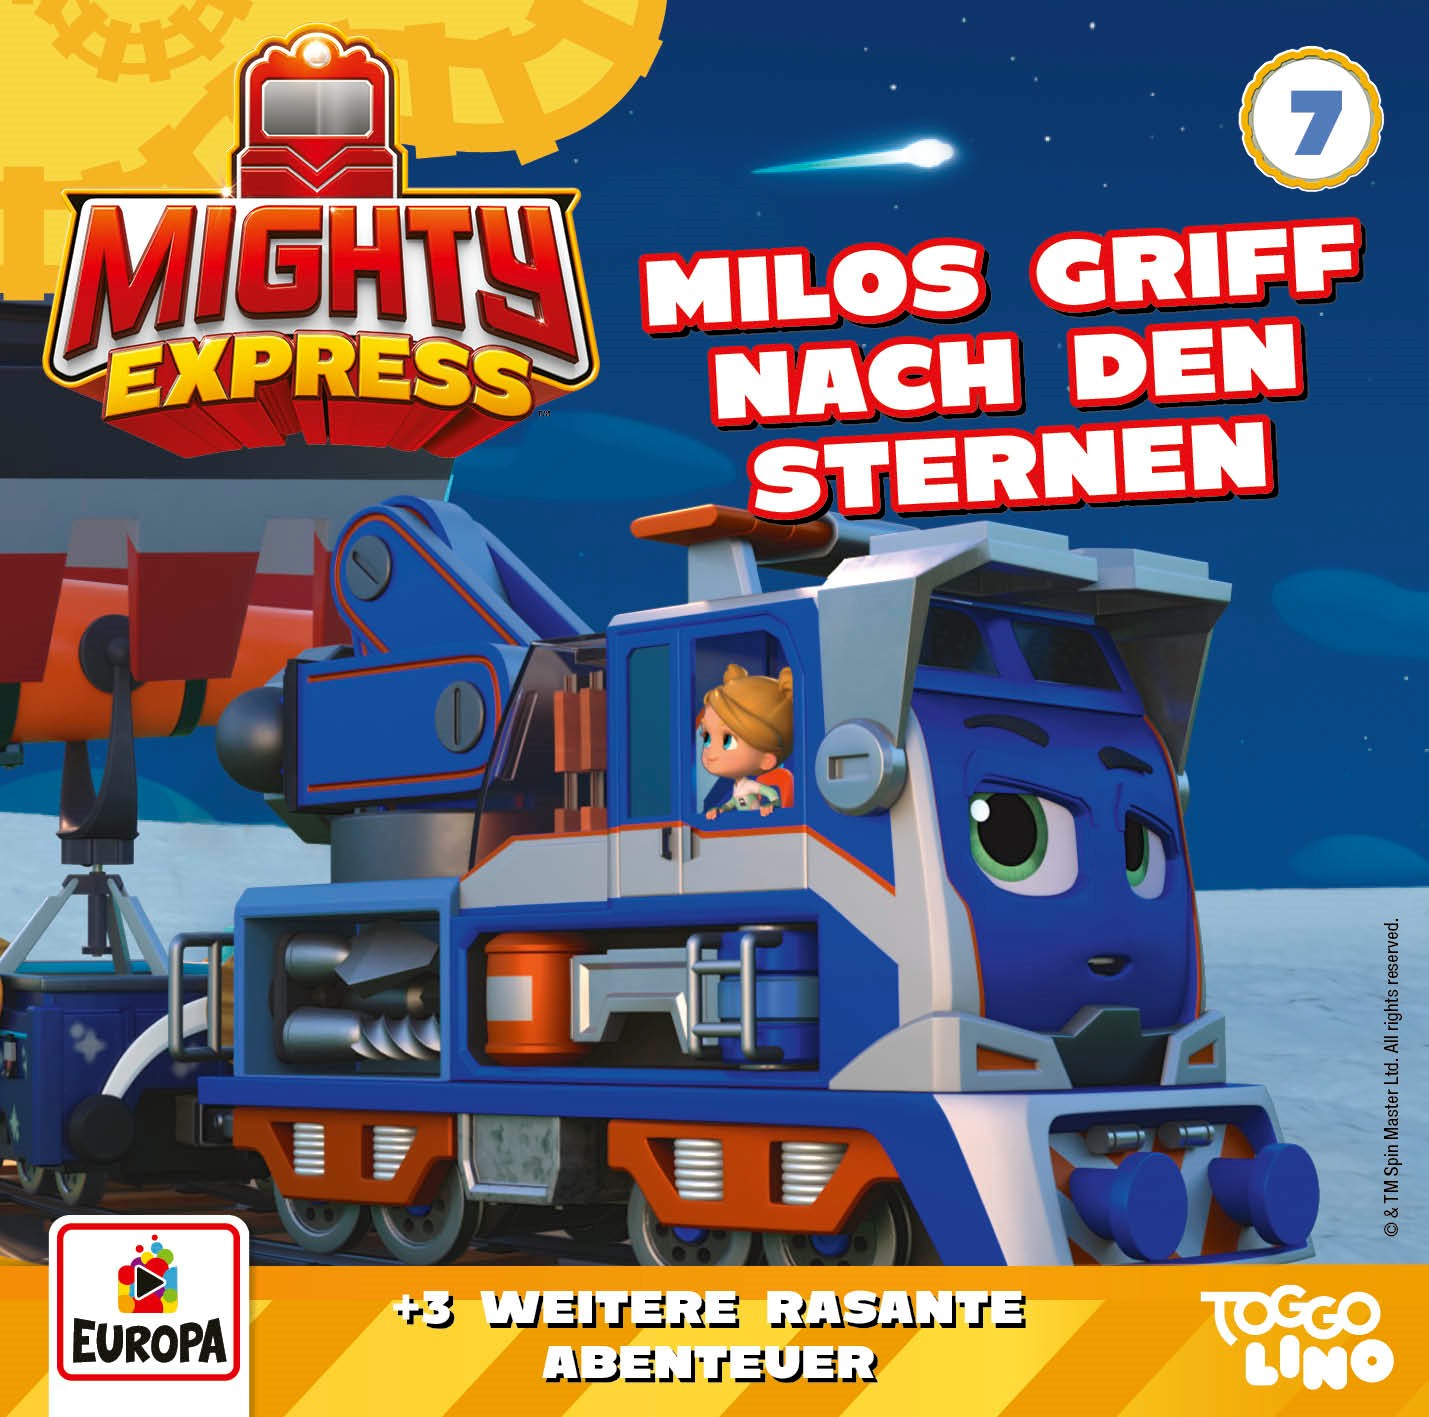 Mighty Express: Milos Griff nach den Sternen